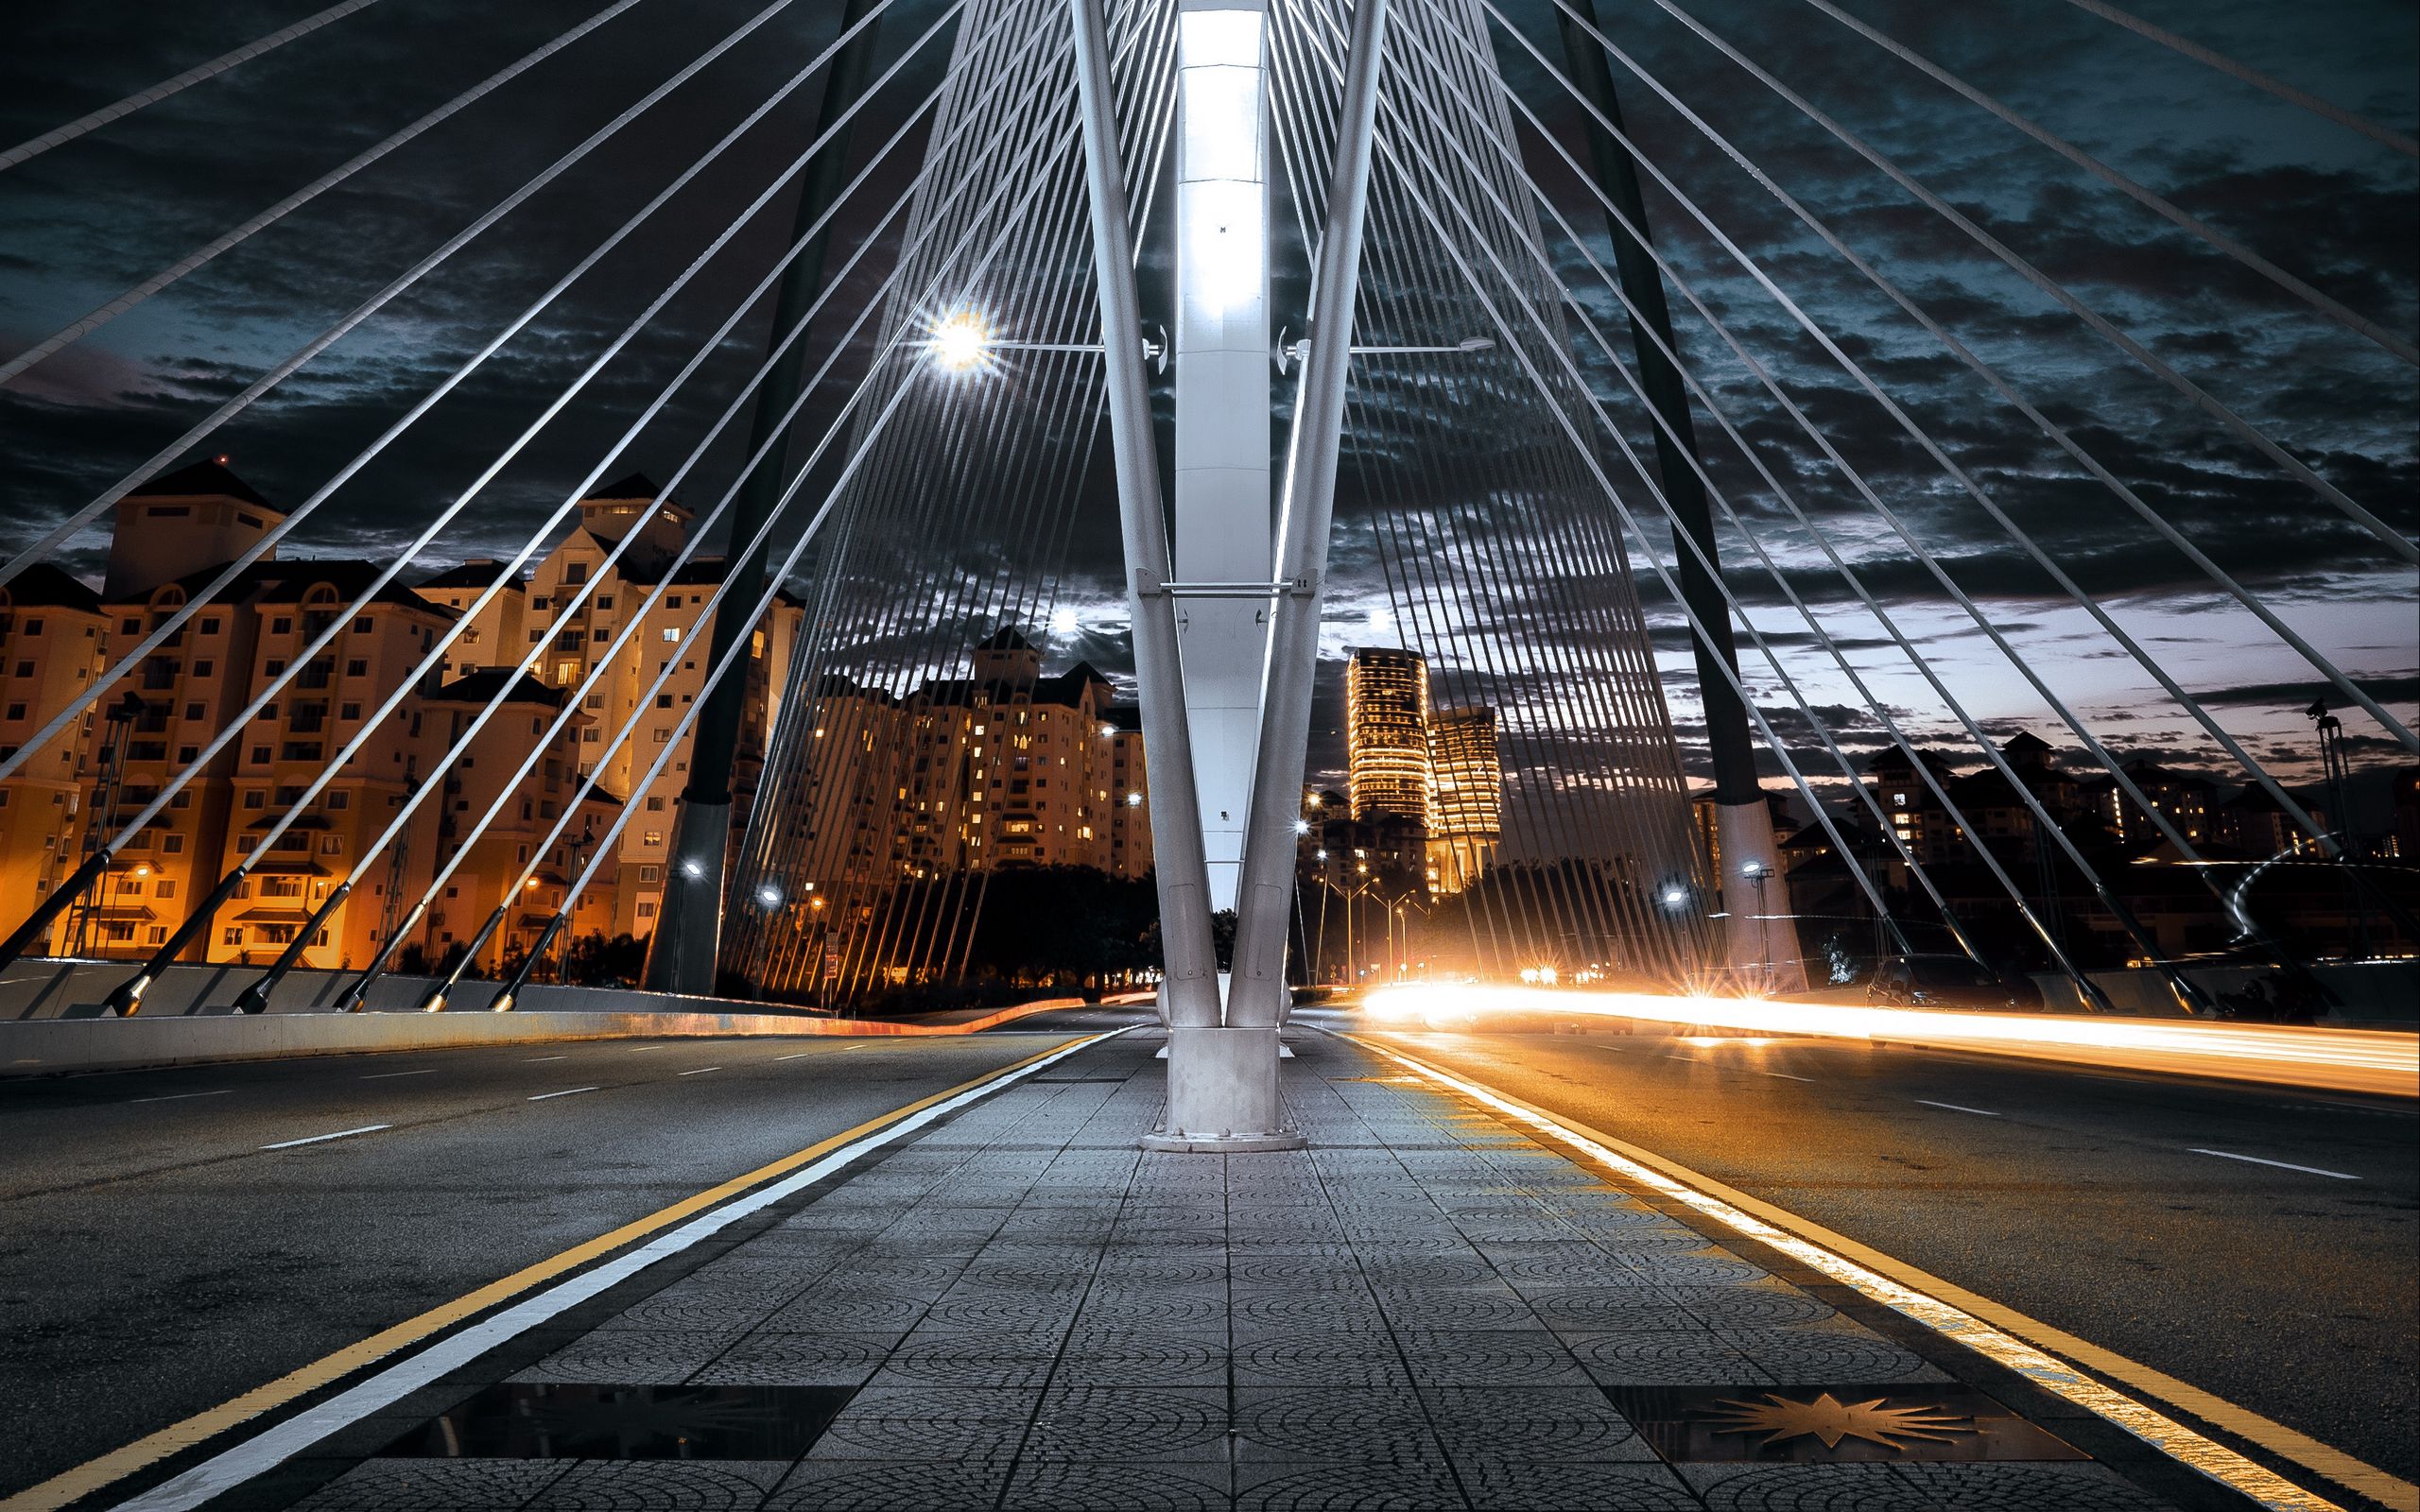 Мост снизу. Вантовый мост Владивосток. Город снизу. Ночной город снизу. Высотная архитектура мост в городе.